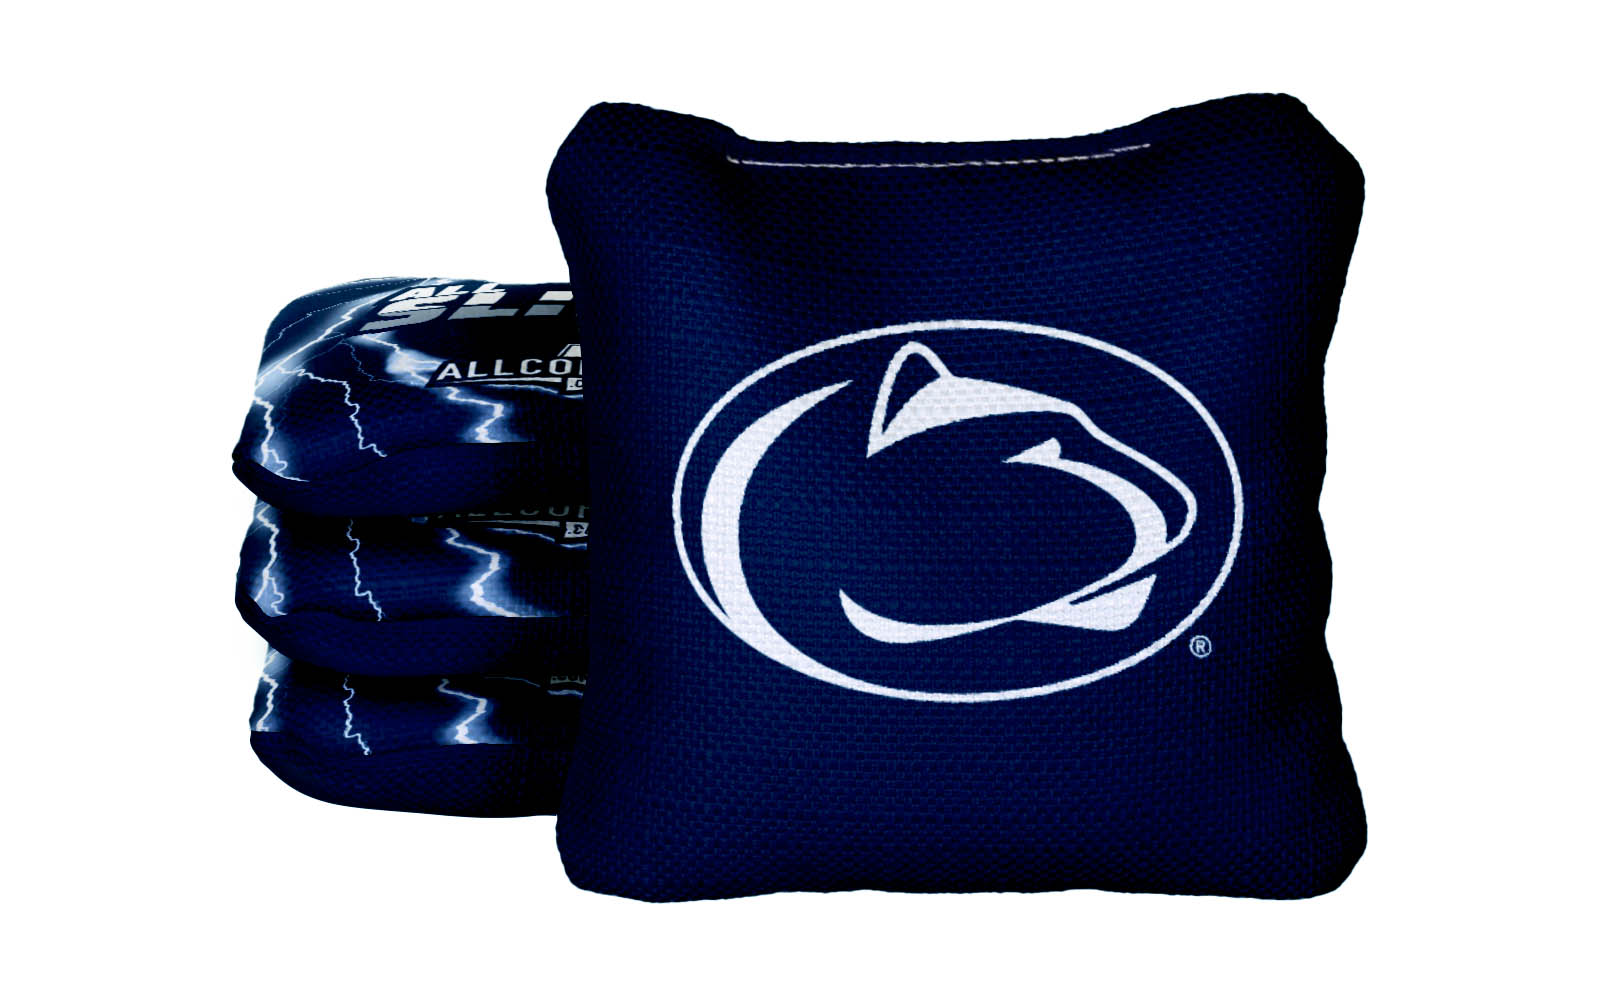 Officially Licensed Collegiate Cornhole Bags - All-Slide 2.0 - Set of 4 - Penn State  University